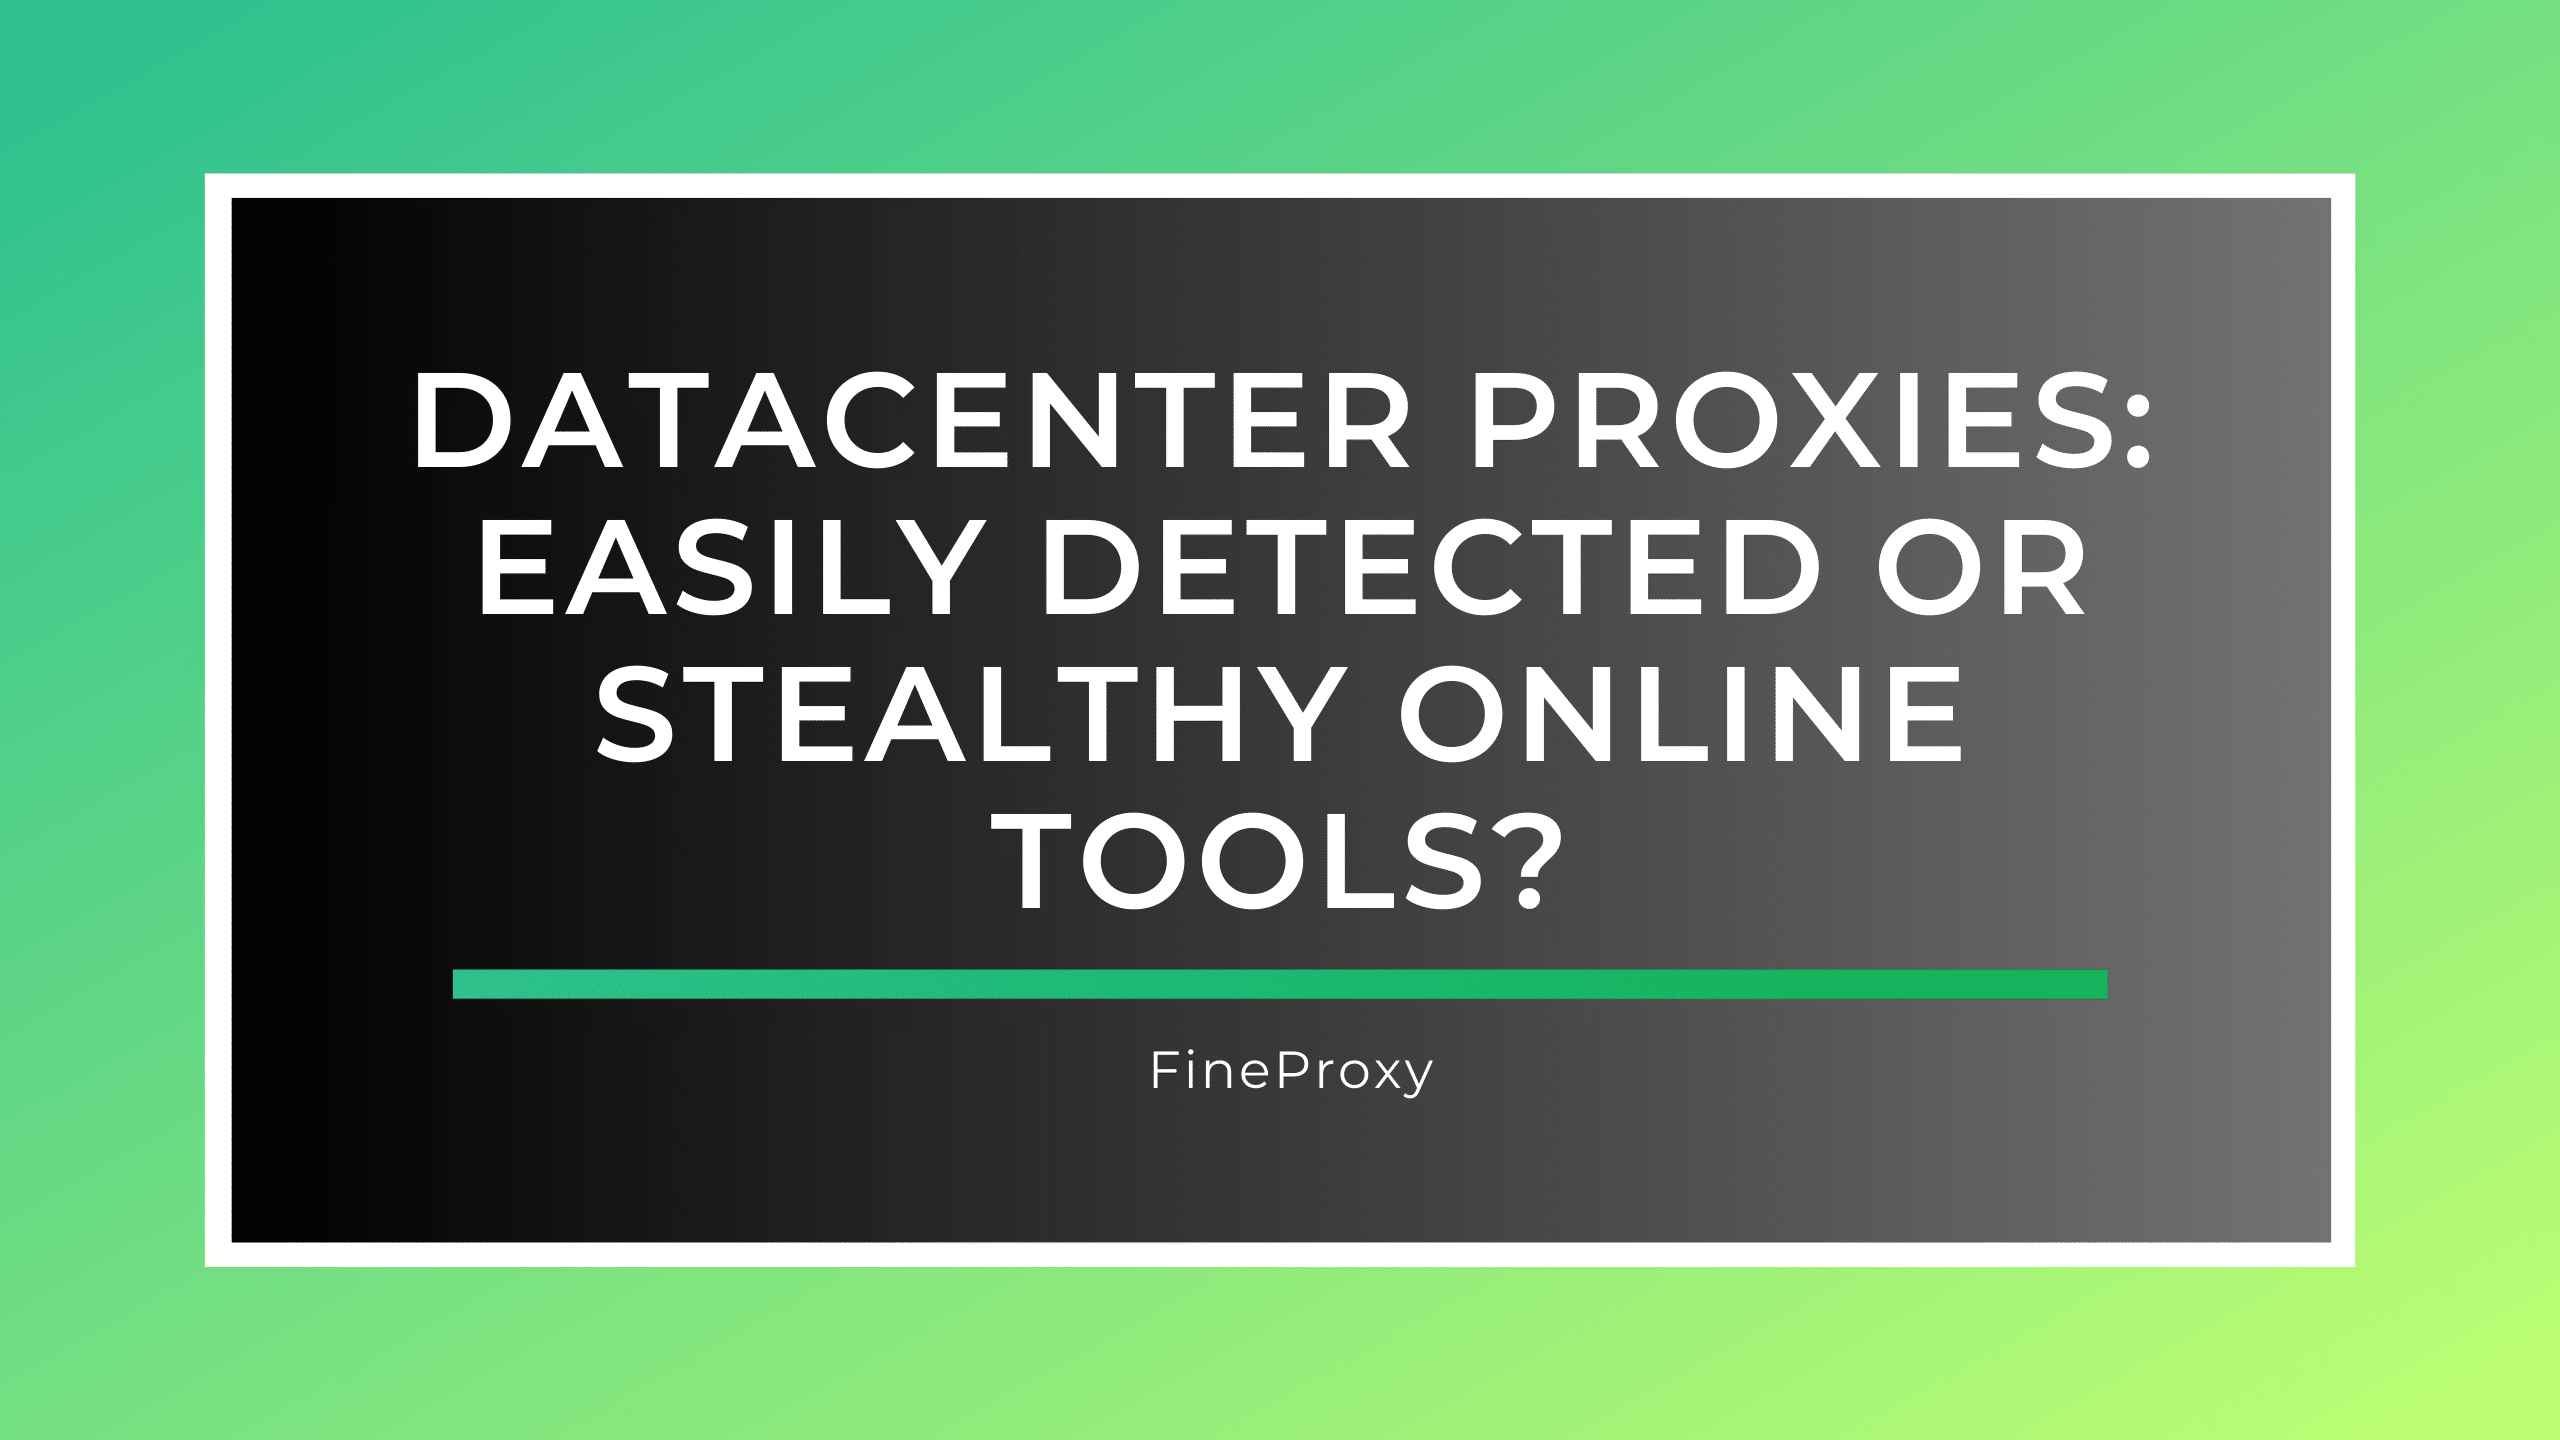 डेटासेंटर प्रॉक्सी: आसानी से पता लगाया जा सकता है या गुप्त ऑनलाइन उपकरण?